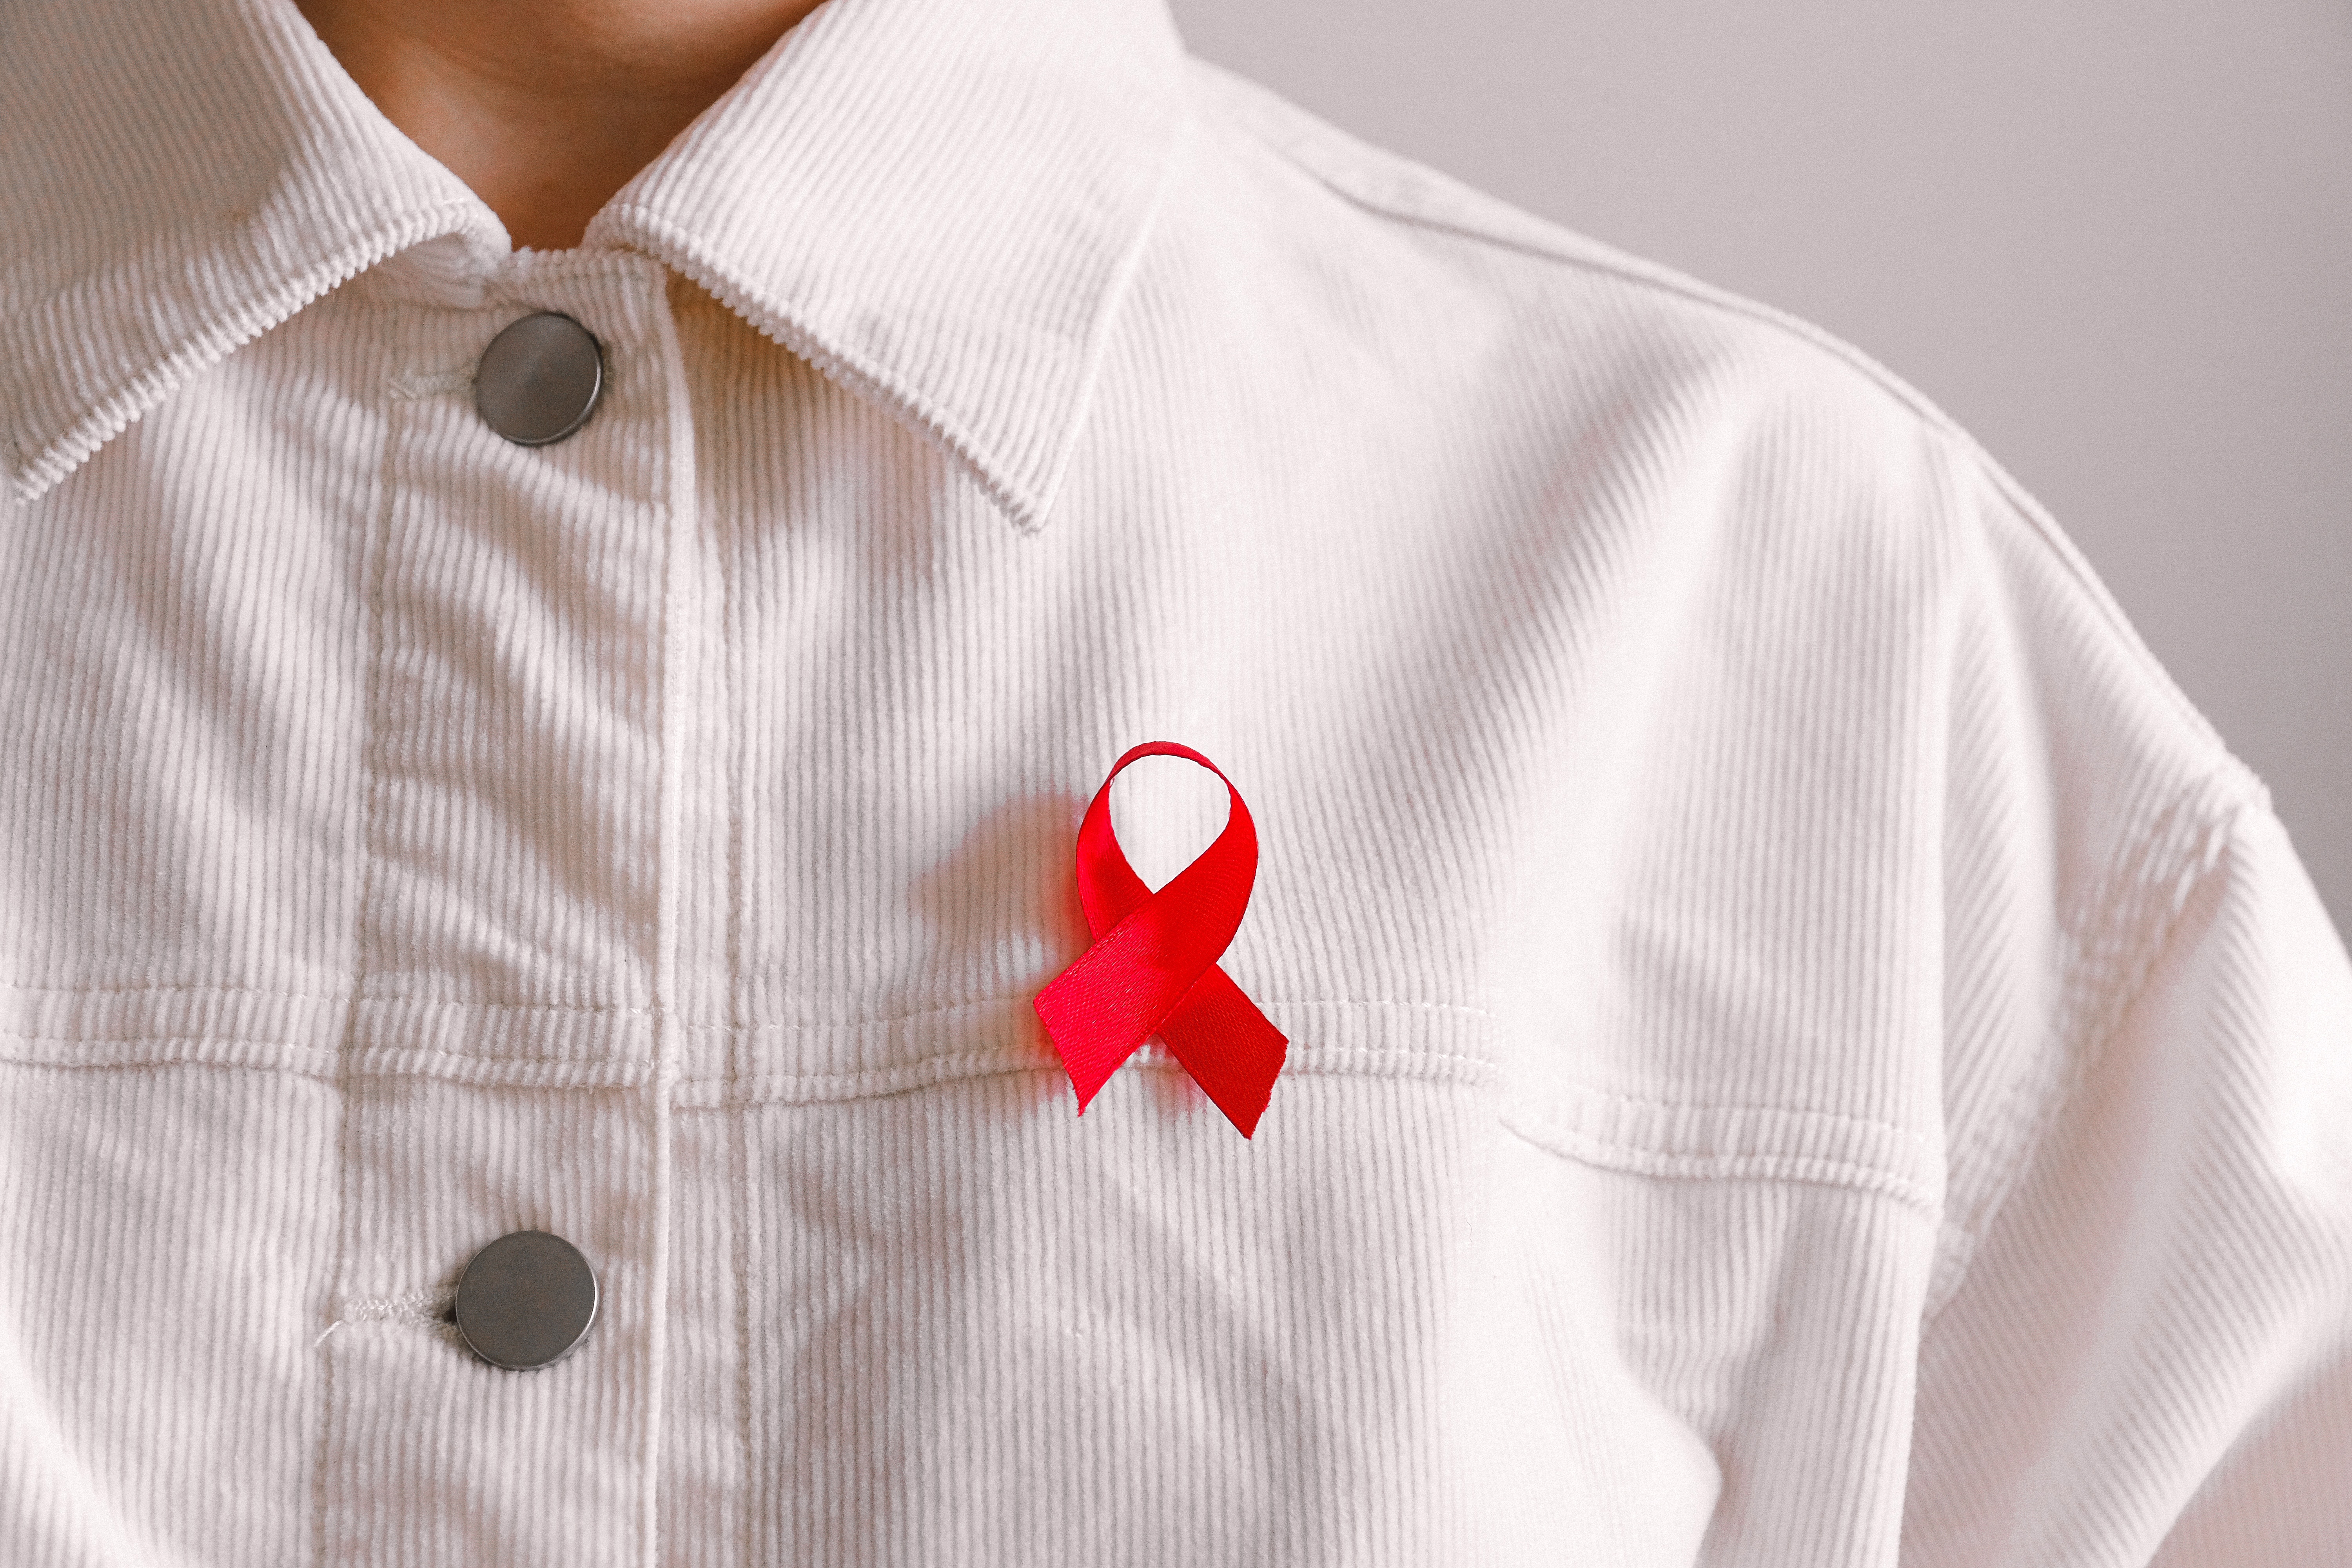 Vencer al VIH, quizás pronto una realidad gracias a la vacuna